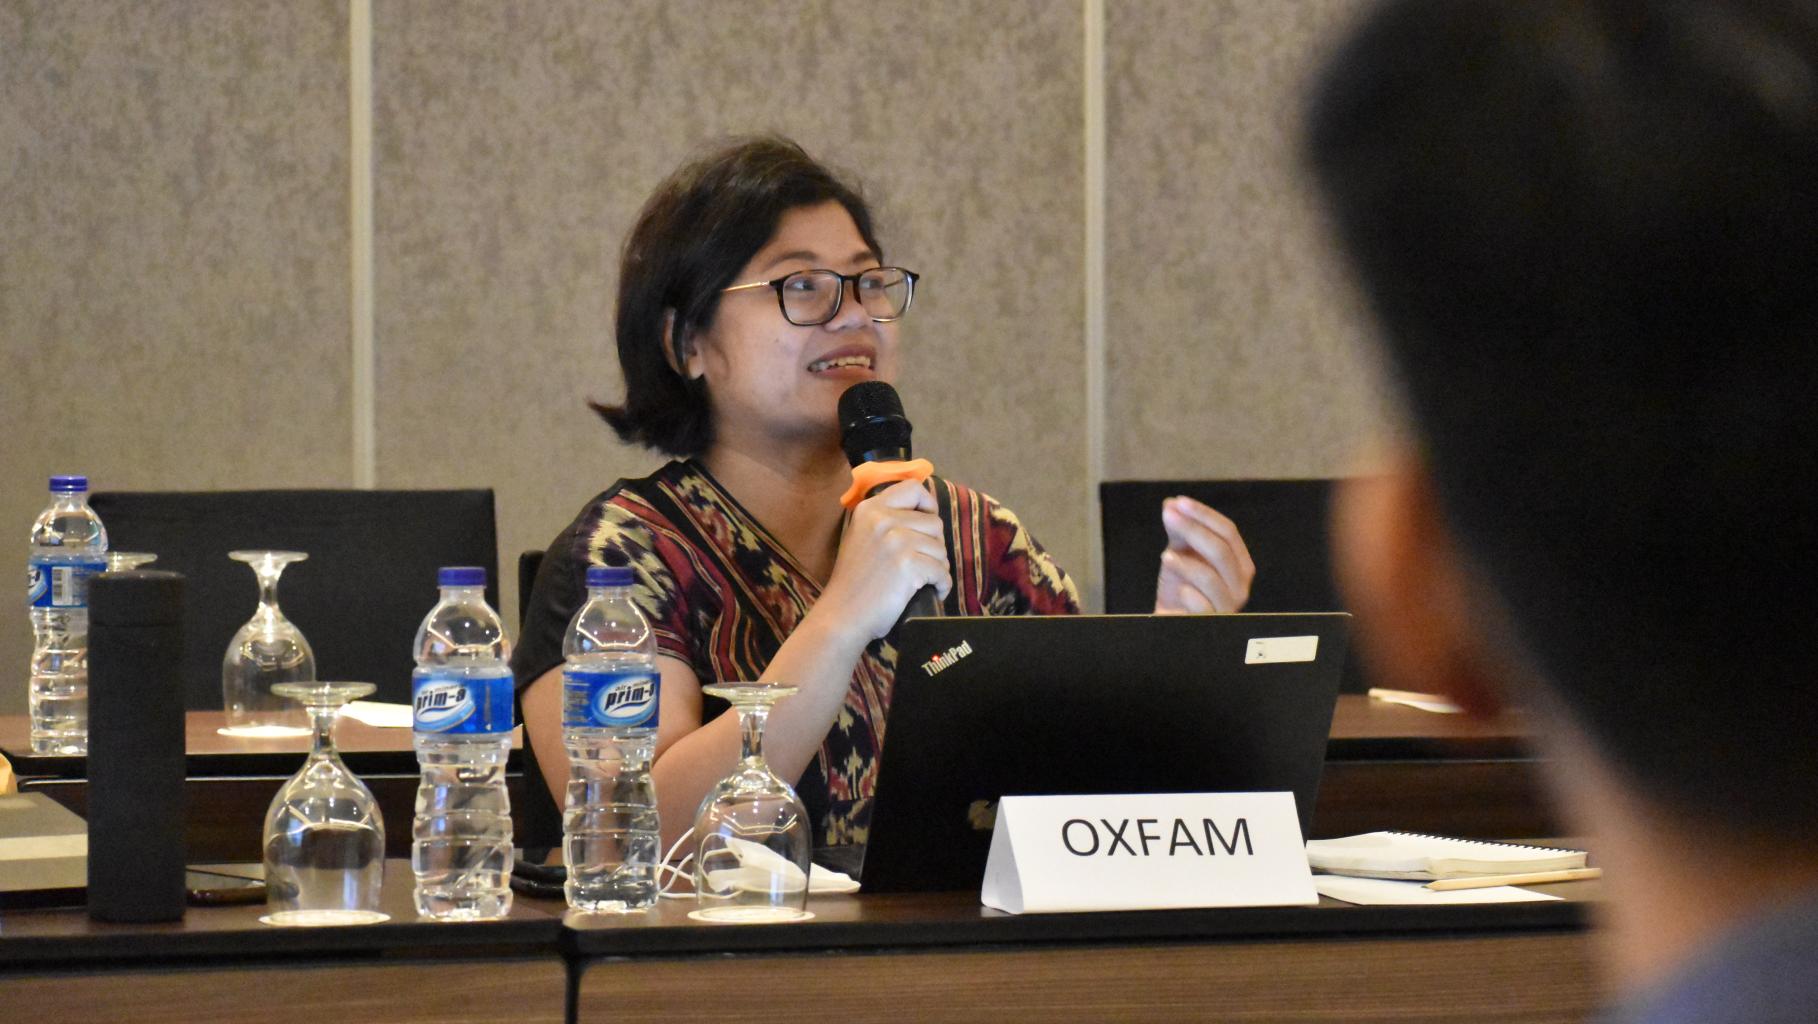 Maria Lauranti, Landesdirektorin für Oxfam in Indonesien, diskutiert bei einem Workshop mit Interessensvertreter*innen aus Indonesien. Sie sitzt an einem Tisch in einem Besprechungsraum und spricht gerade in ein Mikrofon.